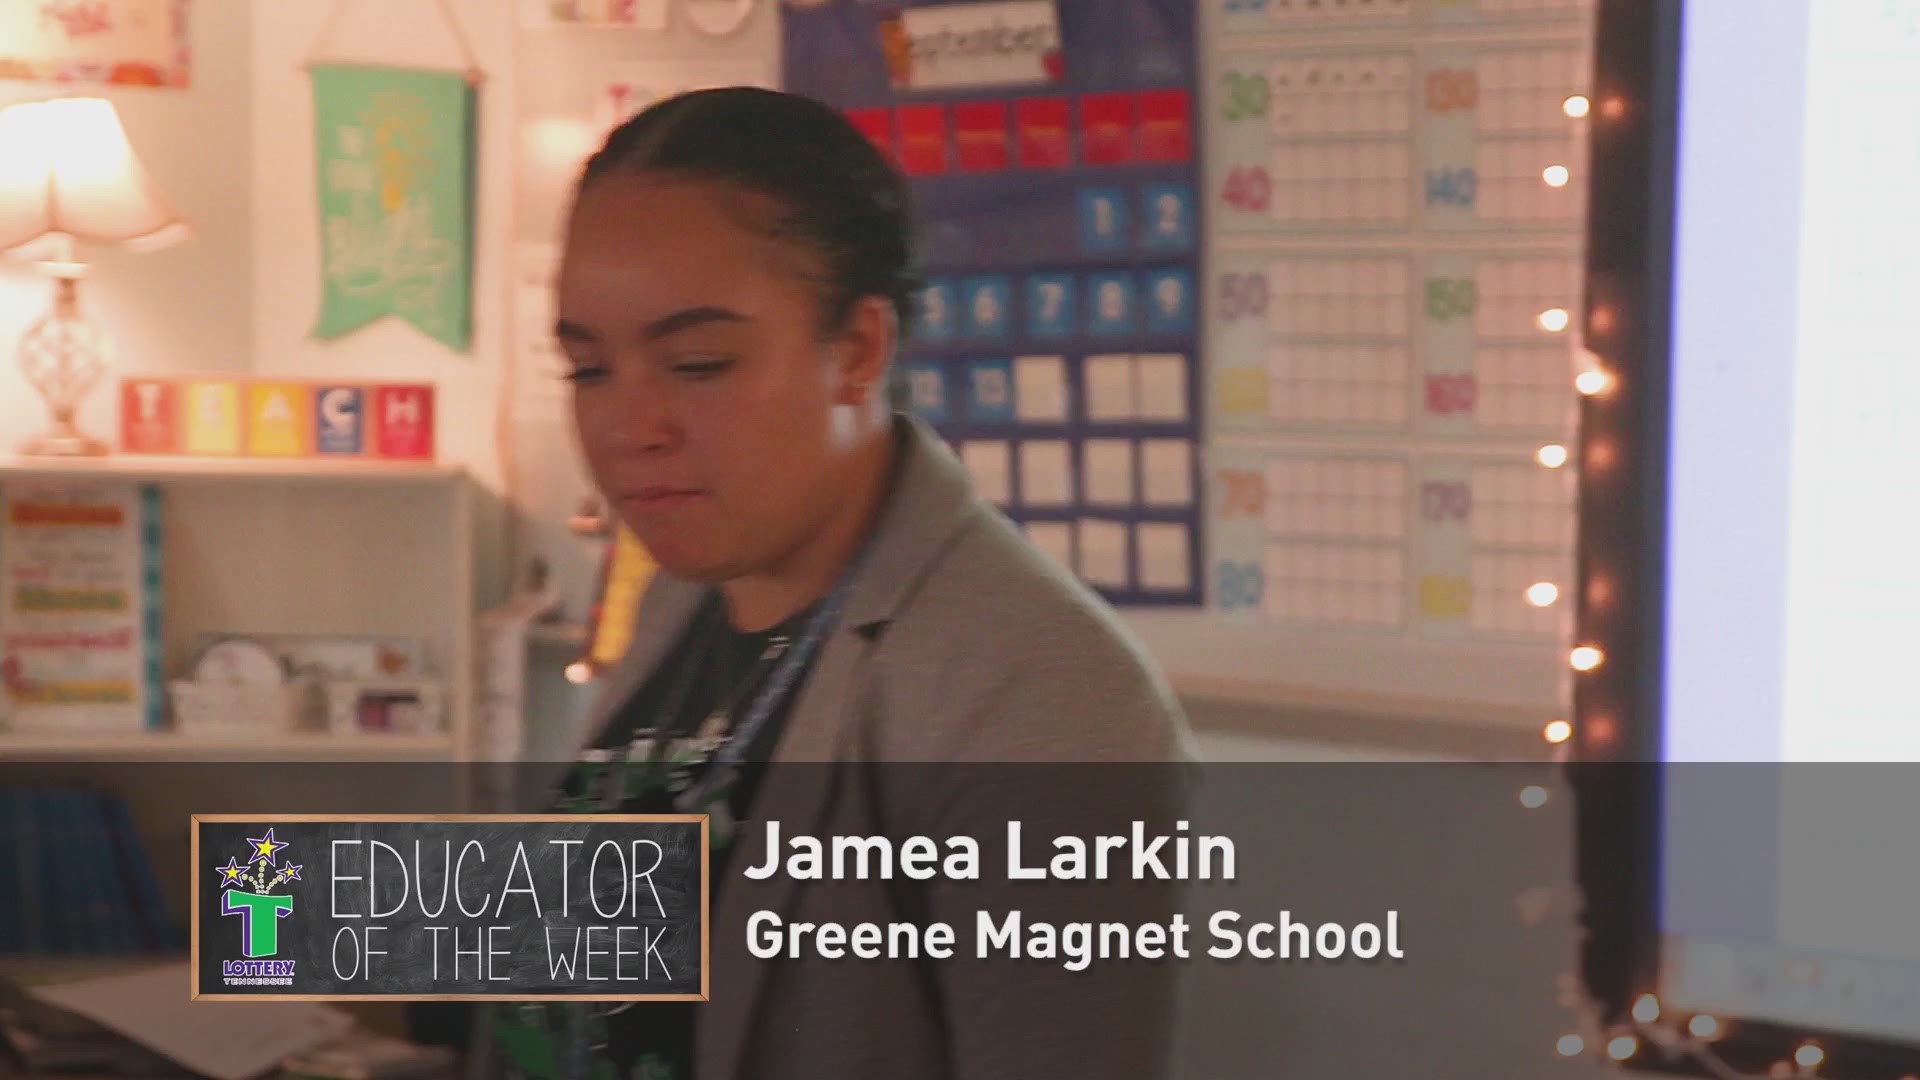 The educator of the week 10/2 is Jamea Larkin